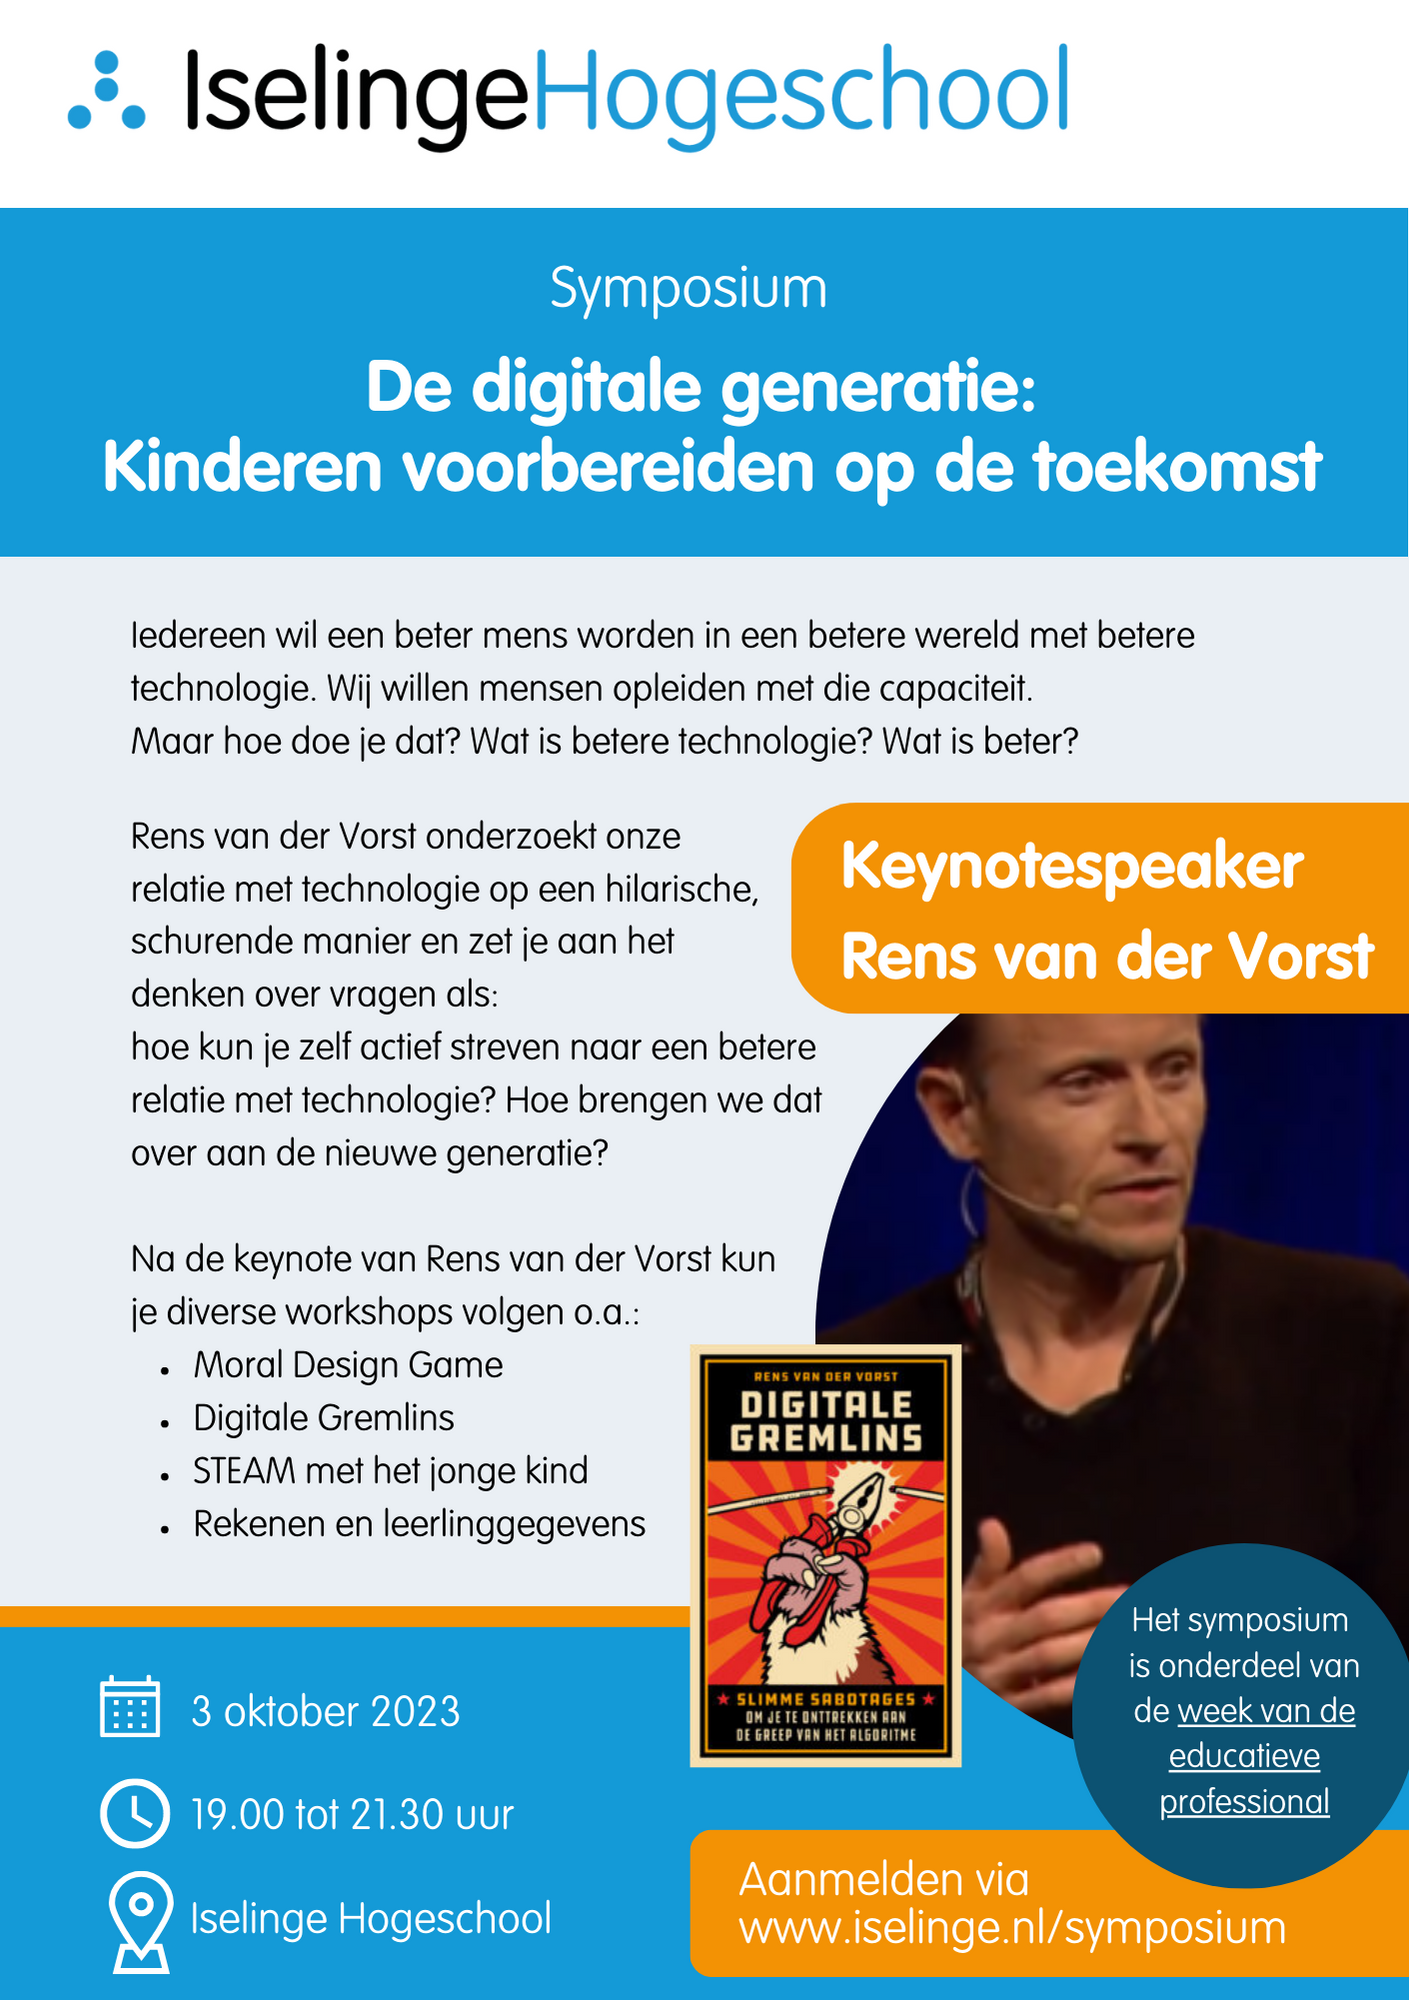 Symposium ‘de digitale generatie: kinderen voorbereiden op de toekomst’